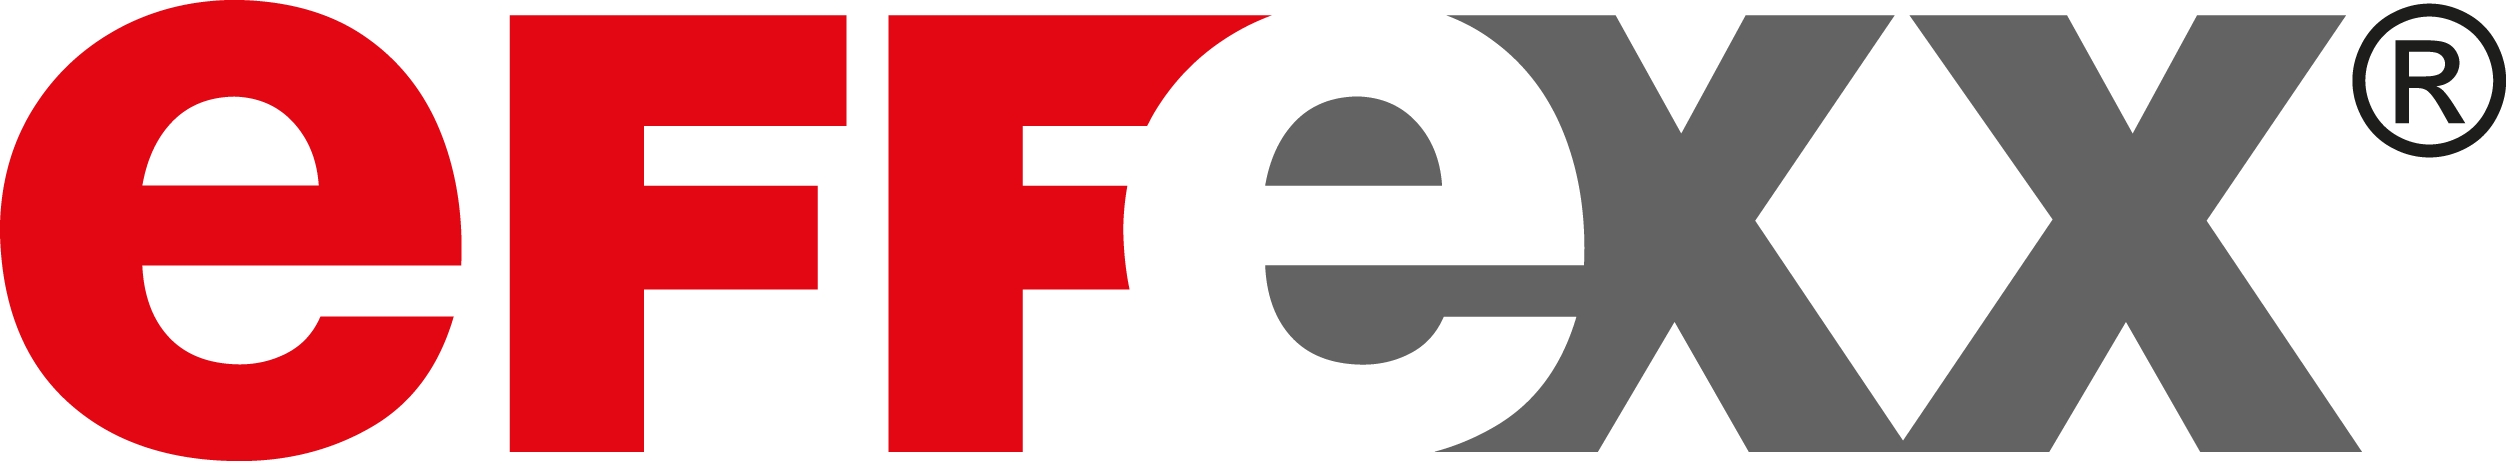 Effexx Logo